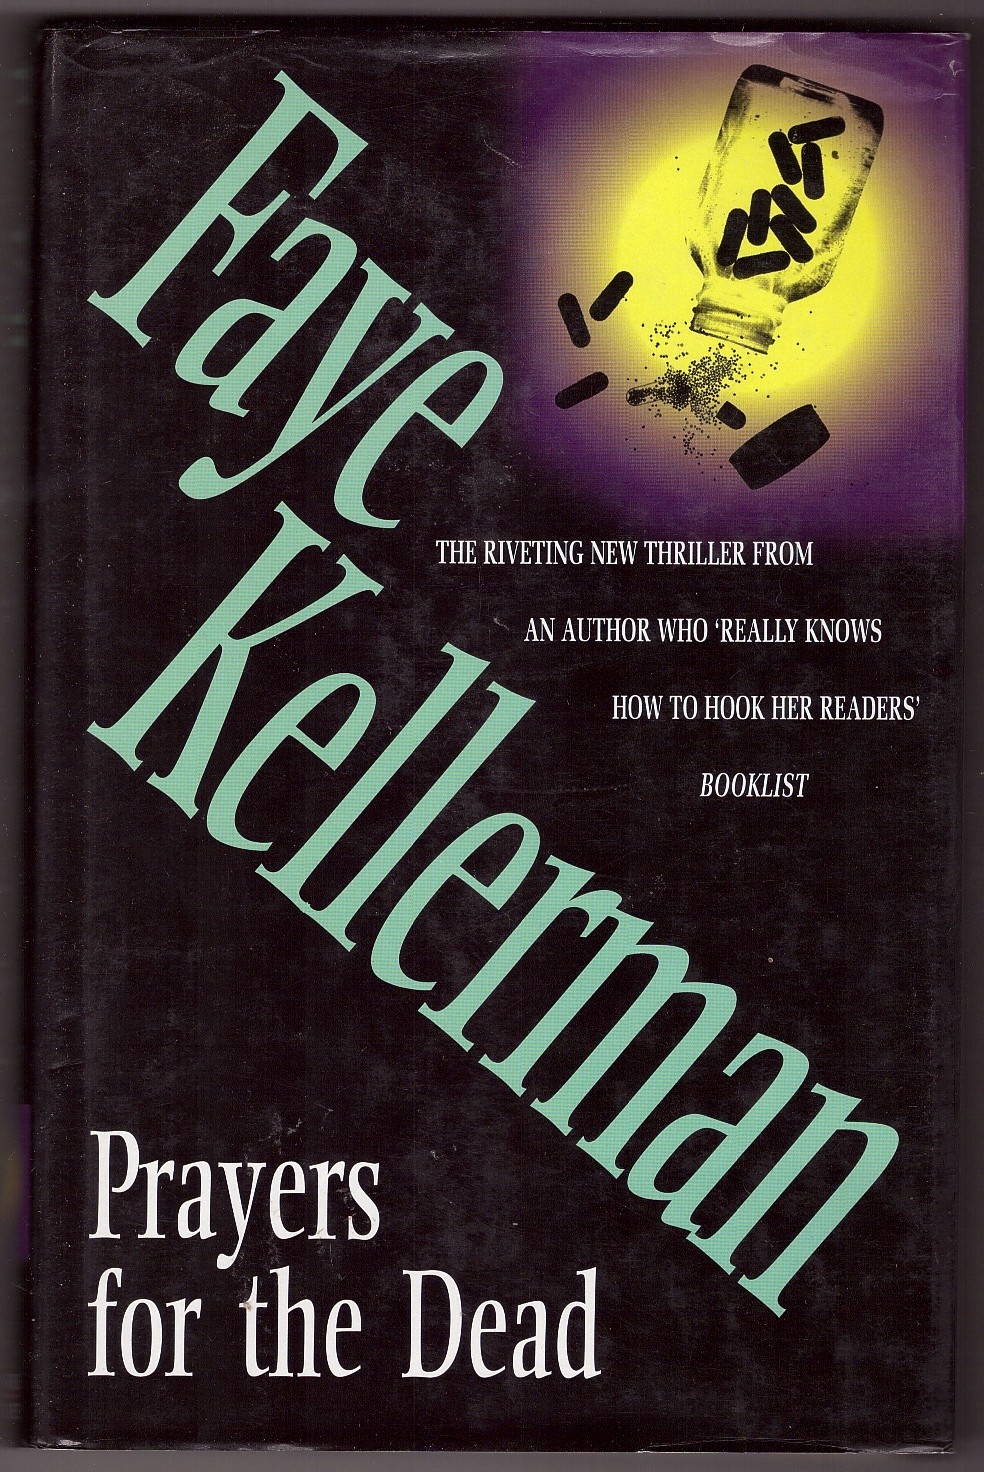 KELLERMAN, FAYE - Prayers for the Dead